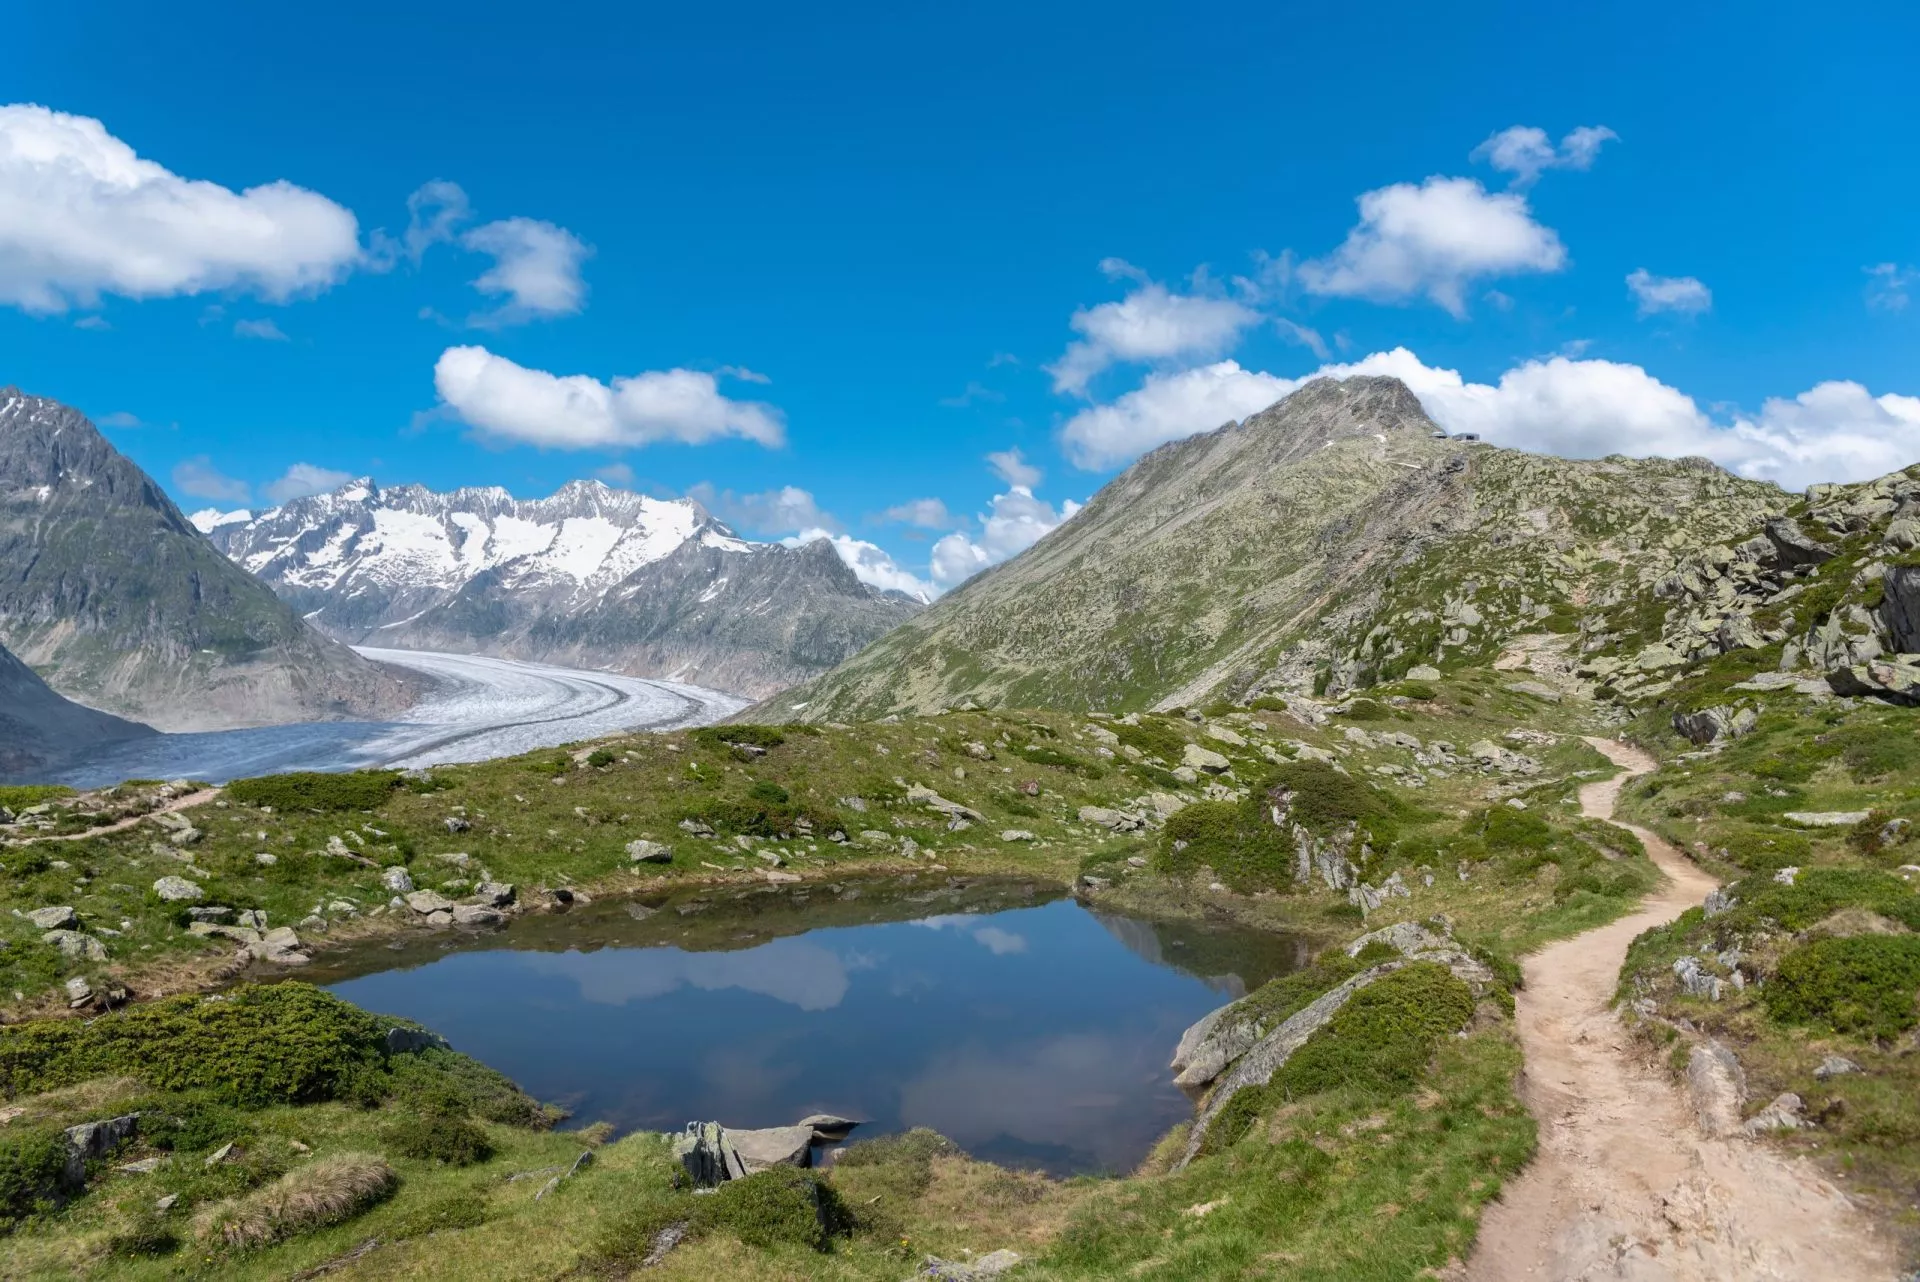 kleiner see auf dem panoramaweg oberhalb des aletschgletschers